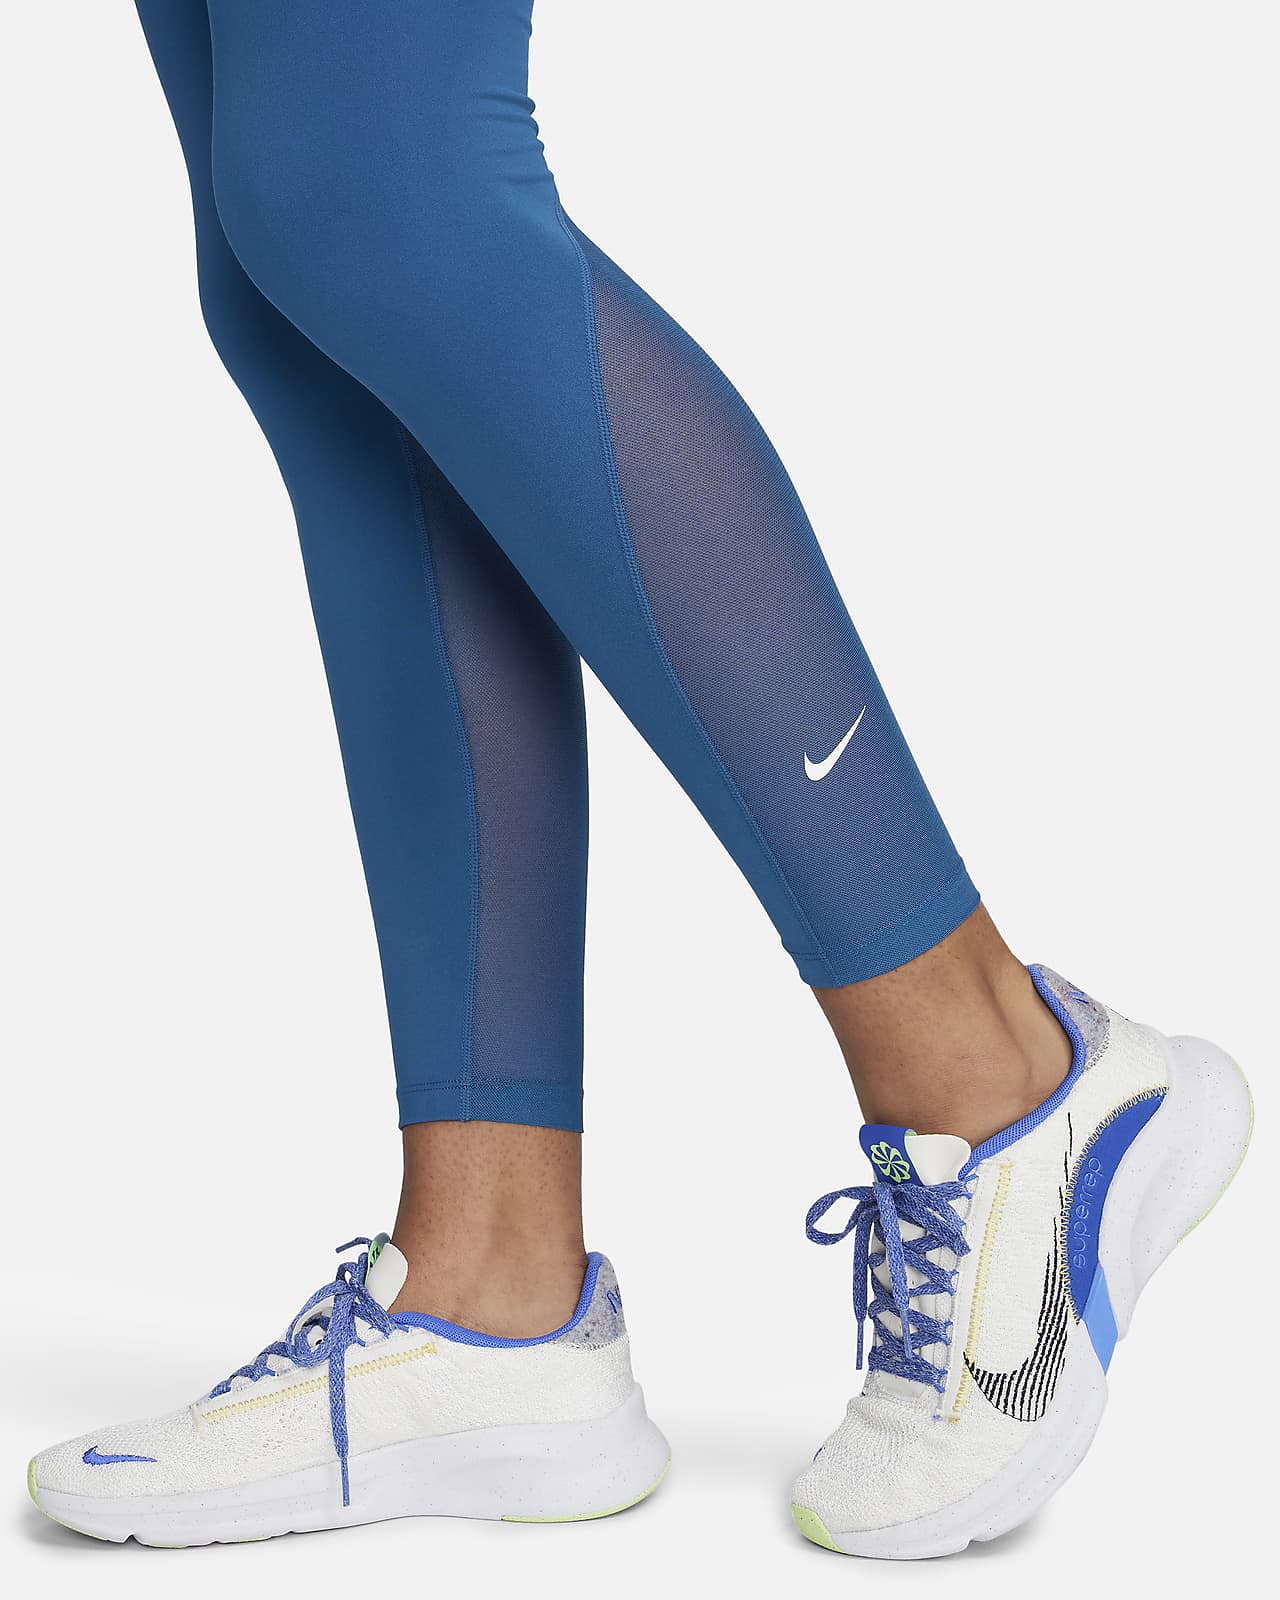 Nike One Women's Mid-Rise 7/8 Mesh-Panelled Leggings. Nike UK